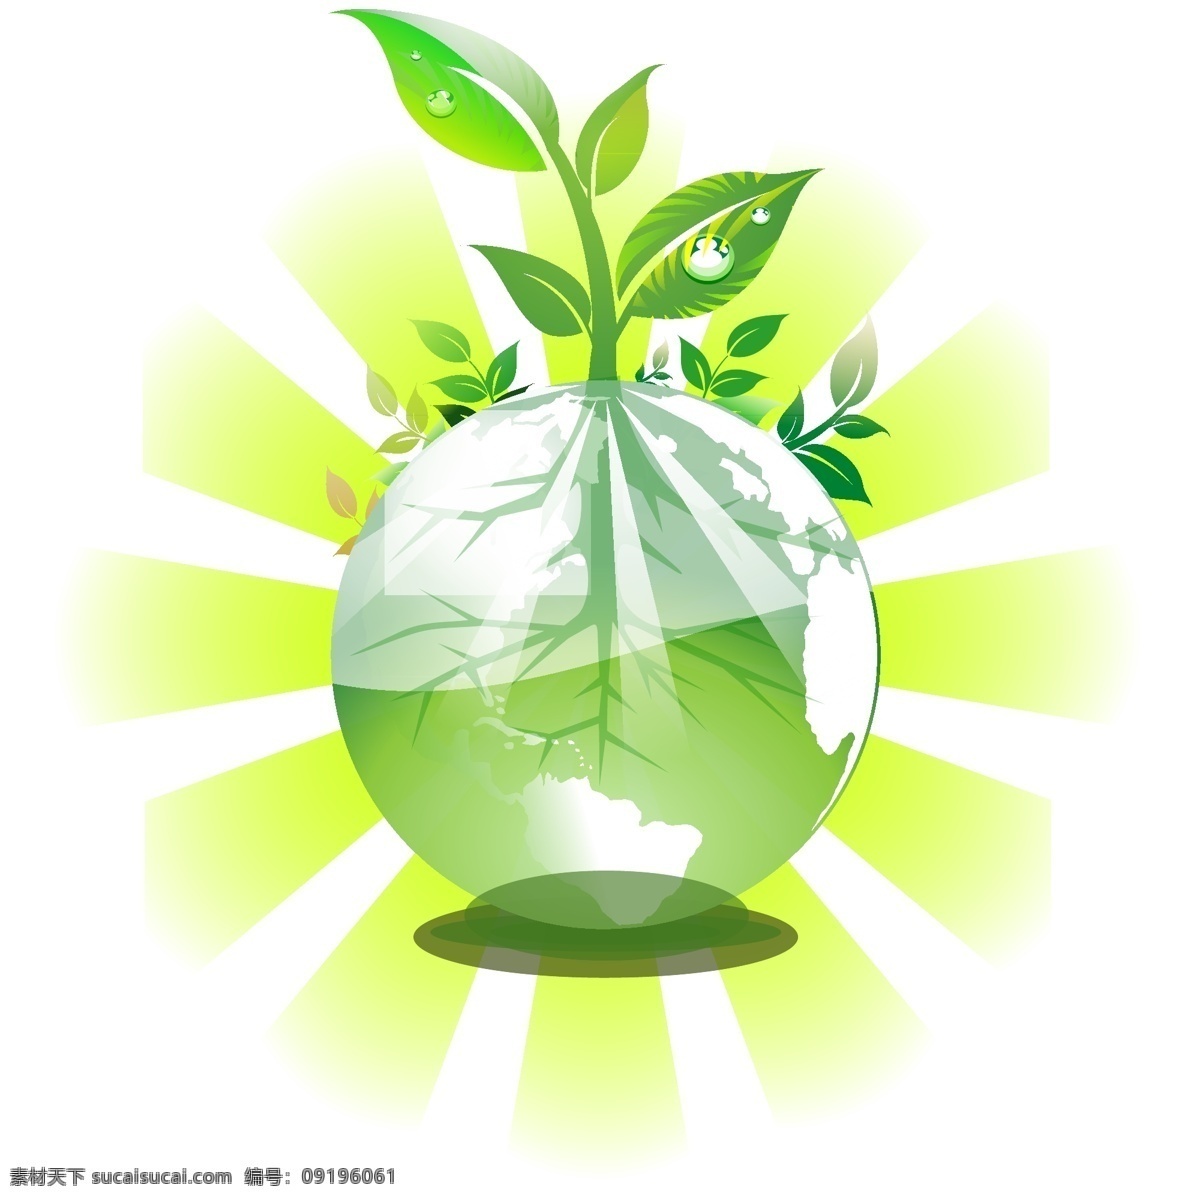 绿色地球插图 绿色 地球 插图 环保地球 爱护水资源 卡通设计